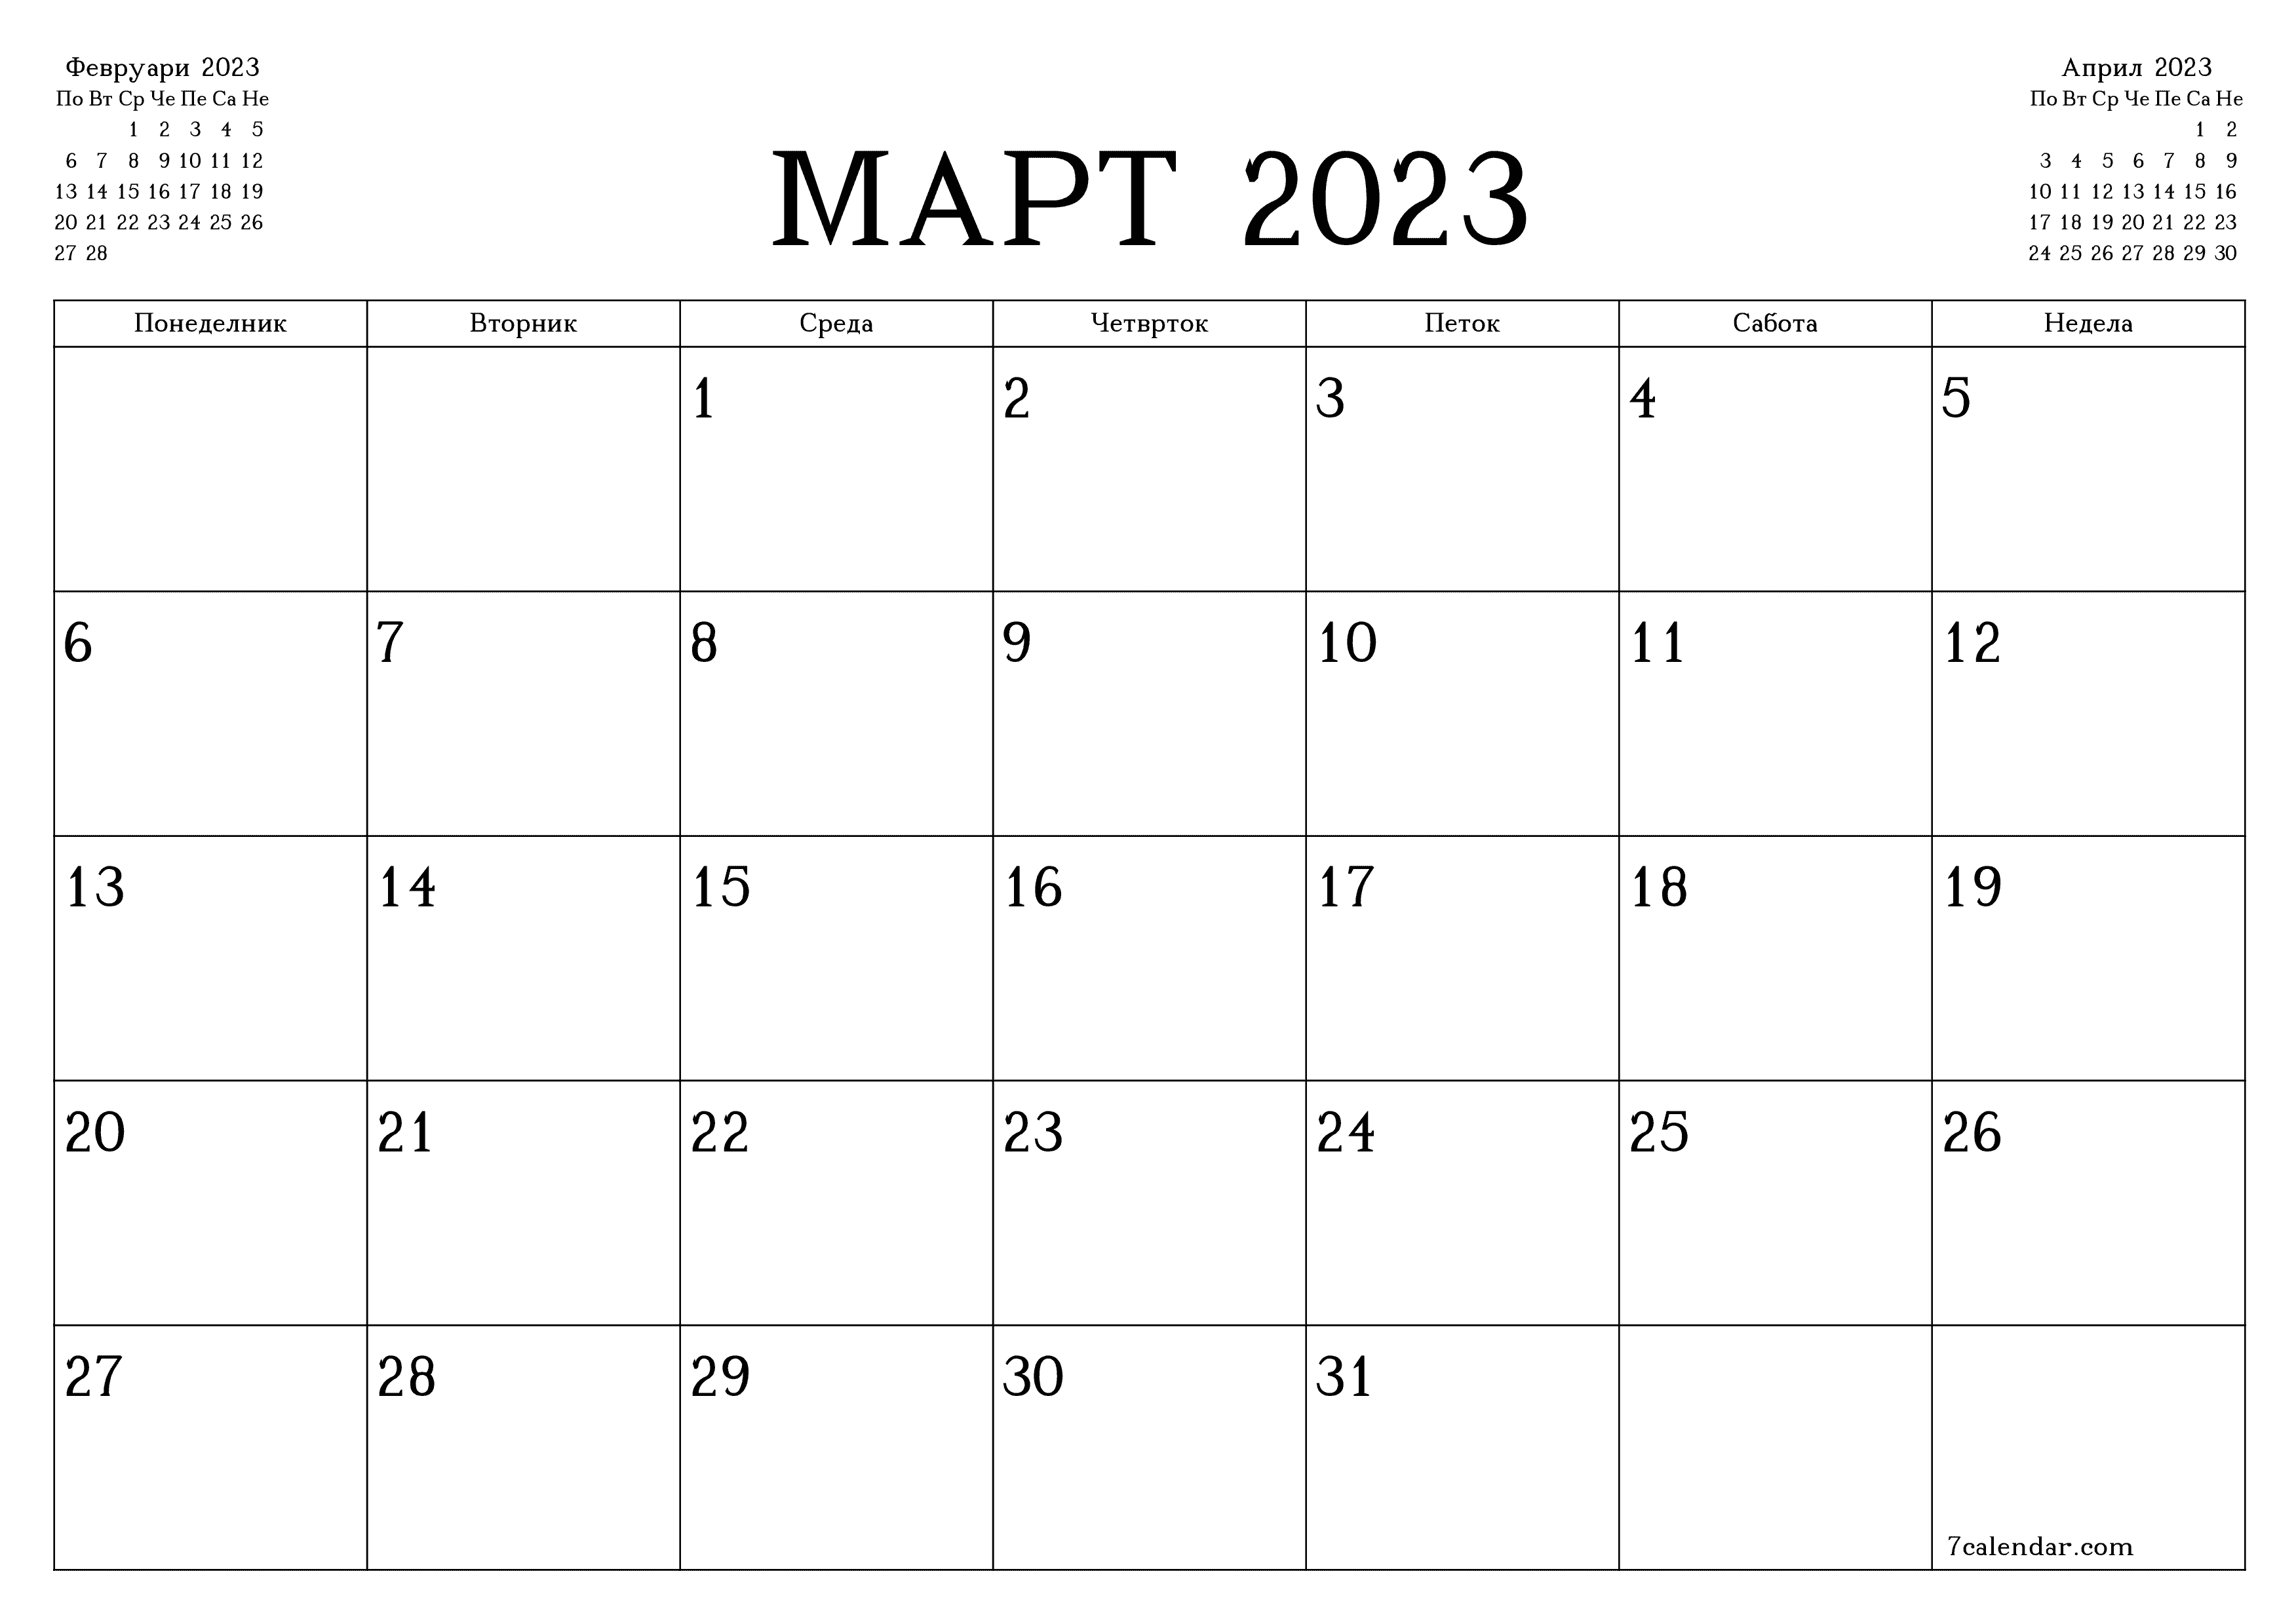 Празен месечен календарски планер за месец Март 2023 со белешки зачувани и печатени во PDF PNG Macedonian - 7calendar.com